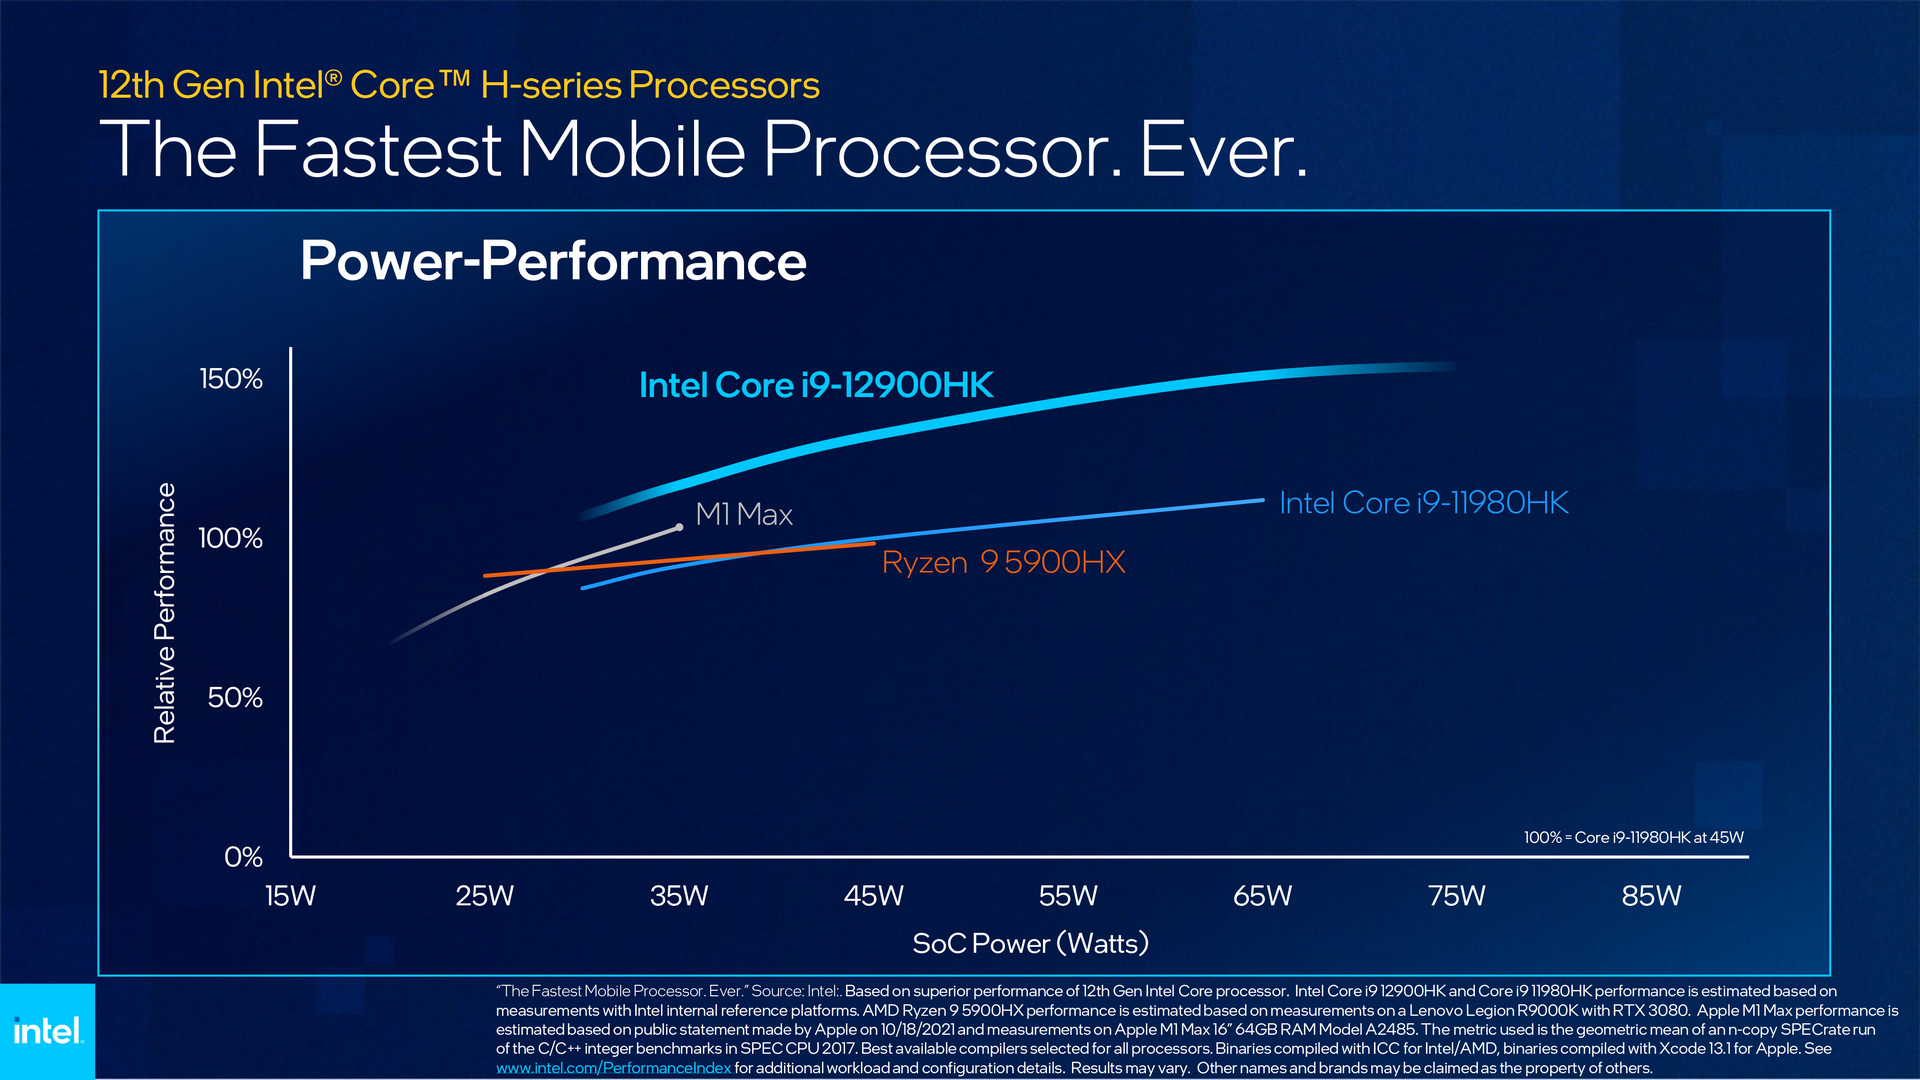 12th Gen Intel Core Mobile Processor